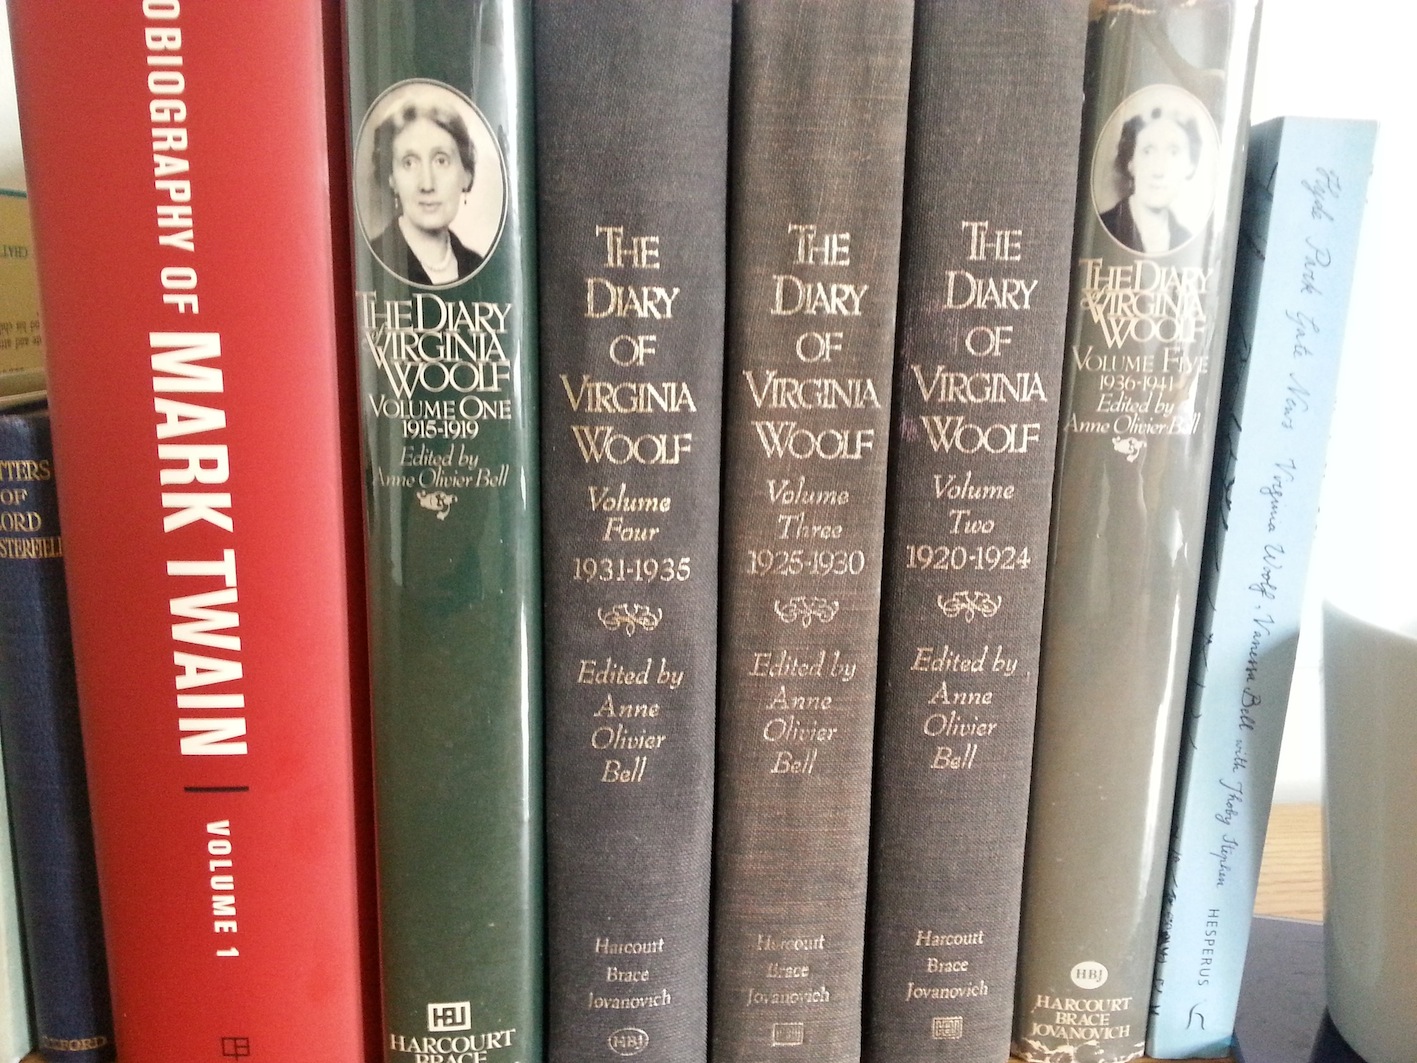 Journal de Virginia Woolf